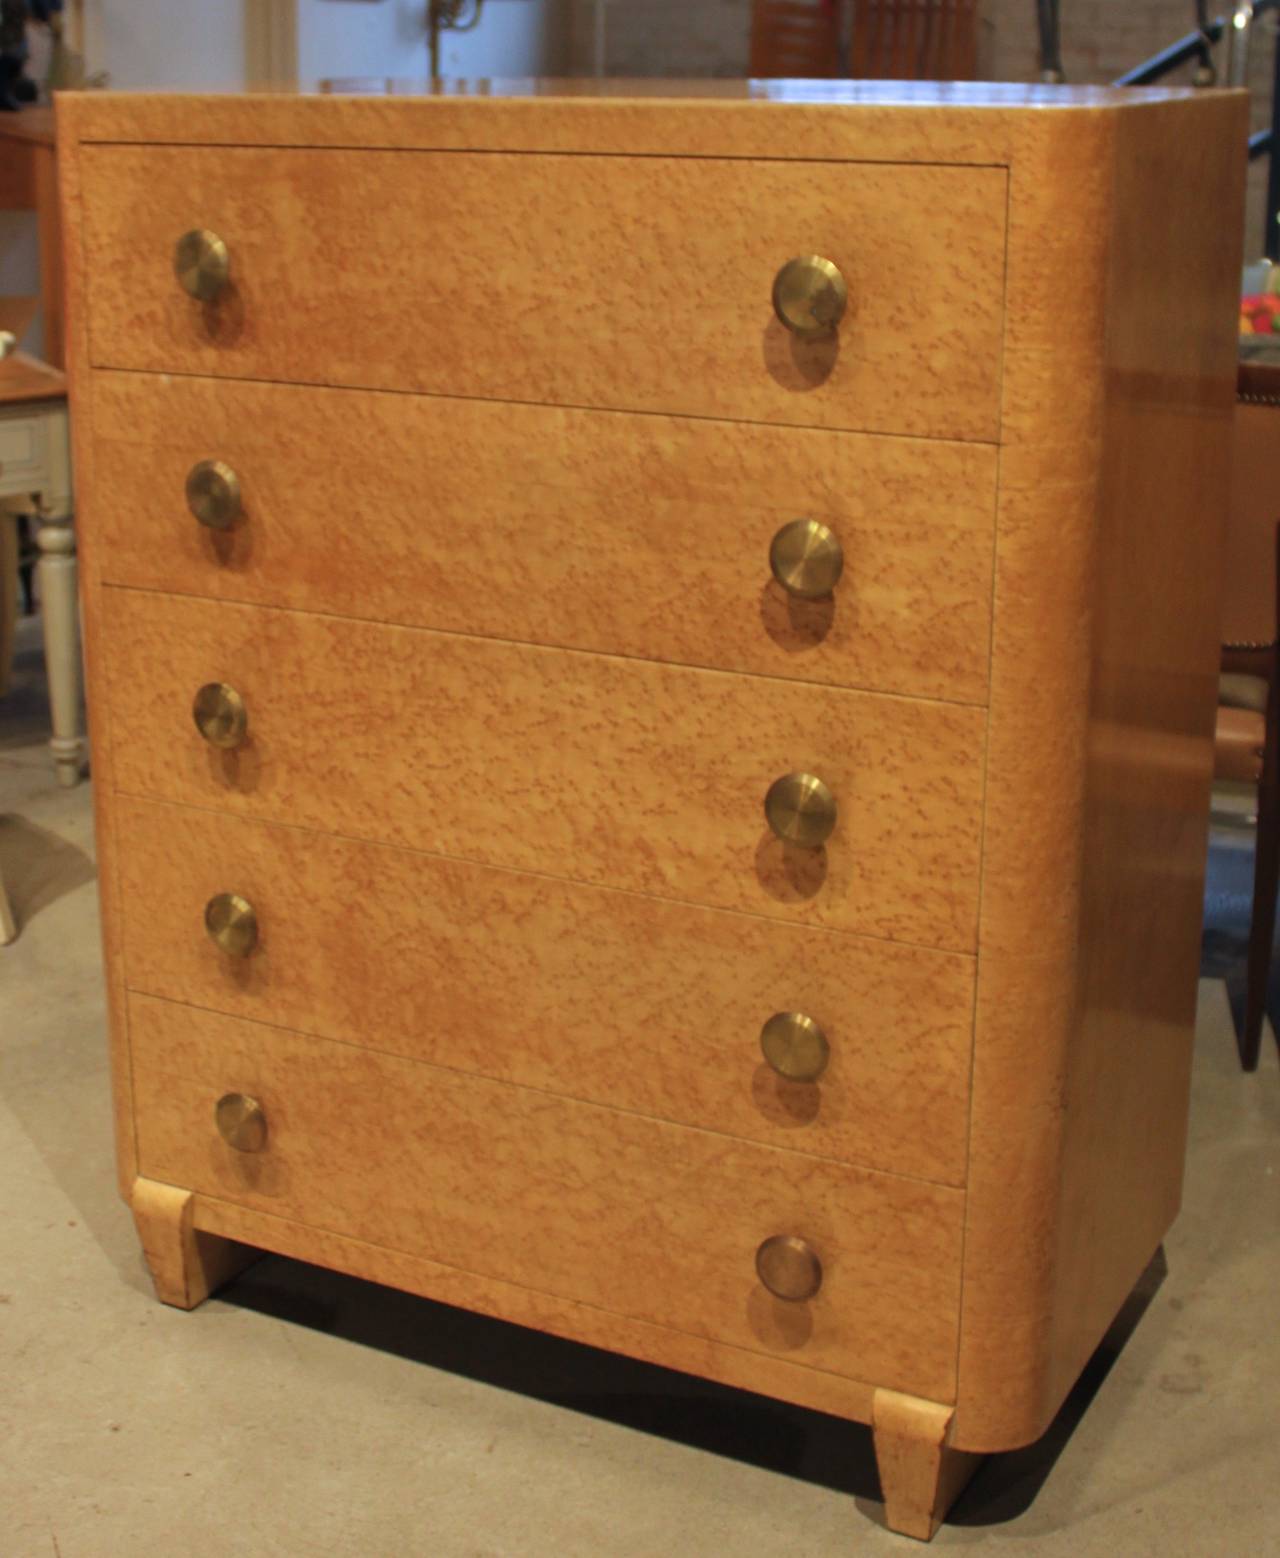 Beautiful Art Deco style dresser in bird's-eye maple. Round brass pulls. Mint vintage condition.